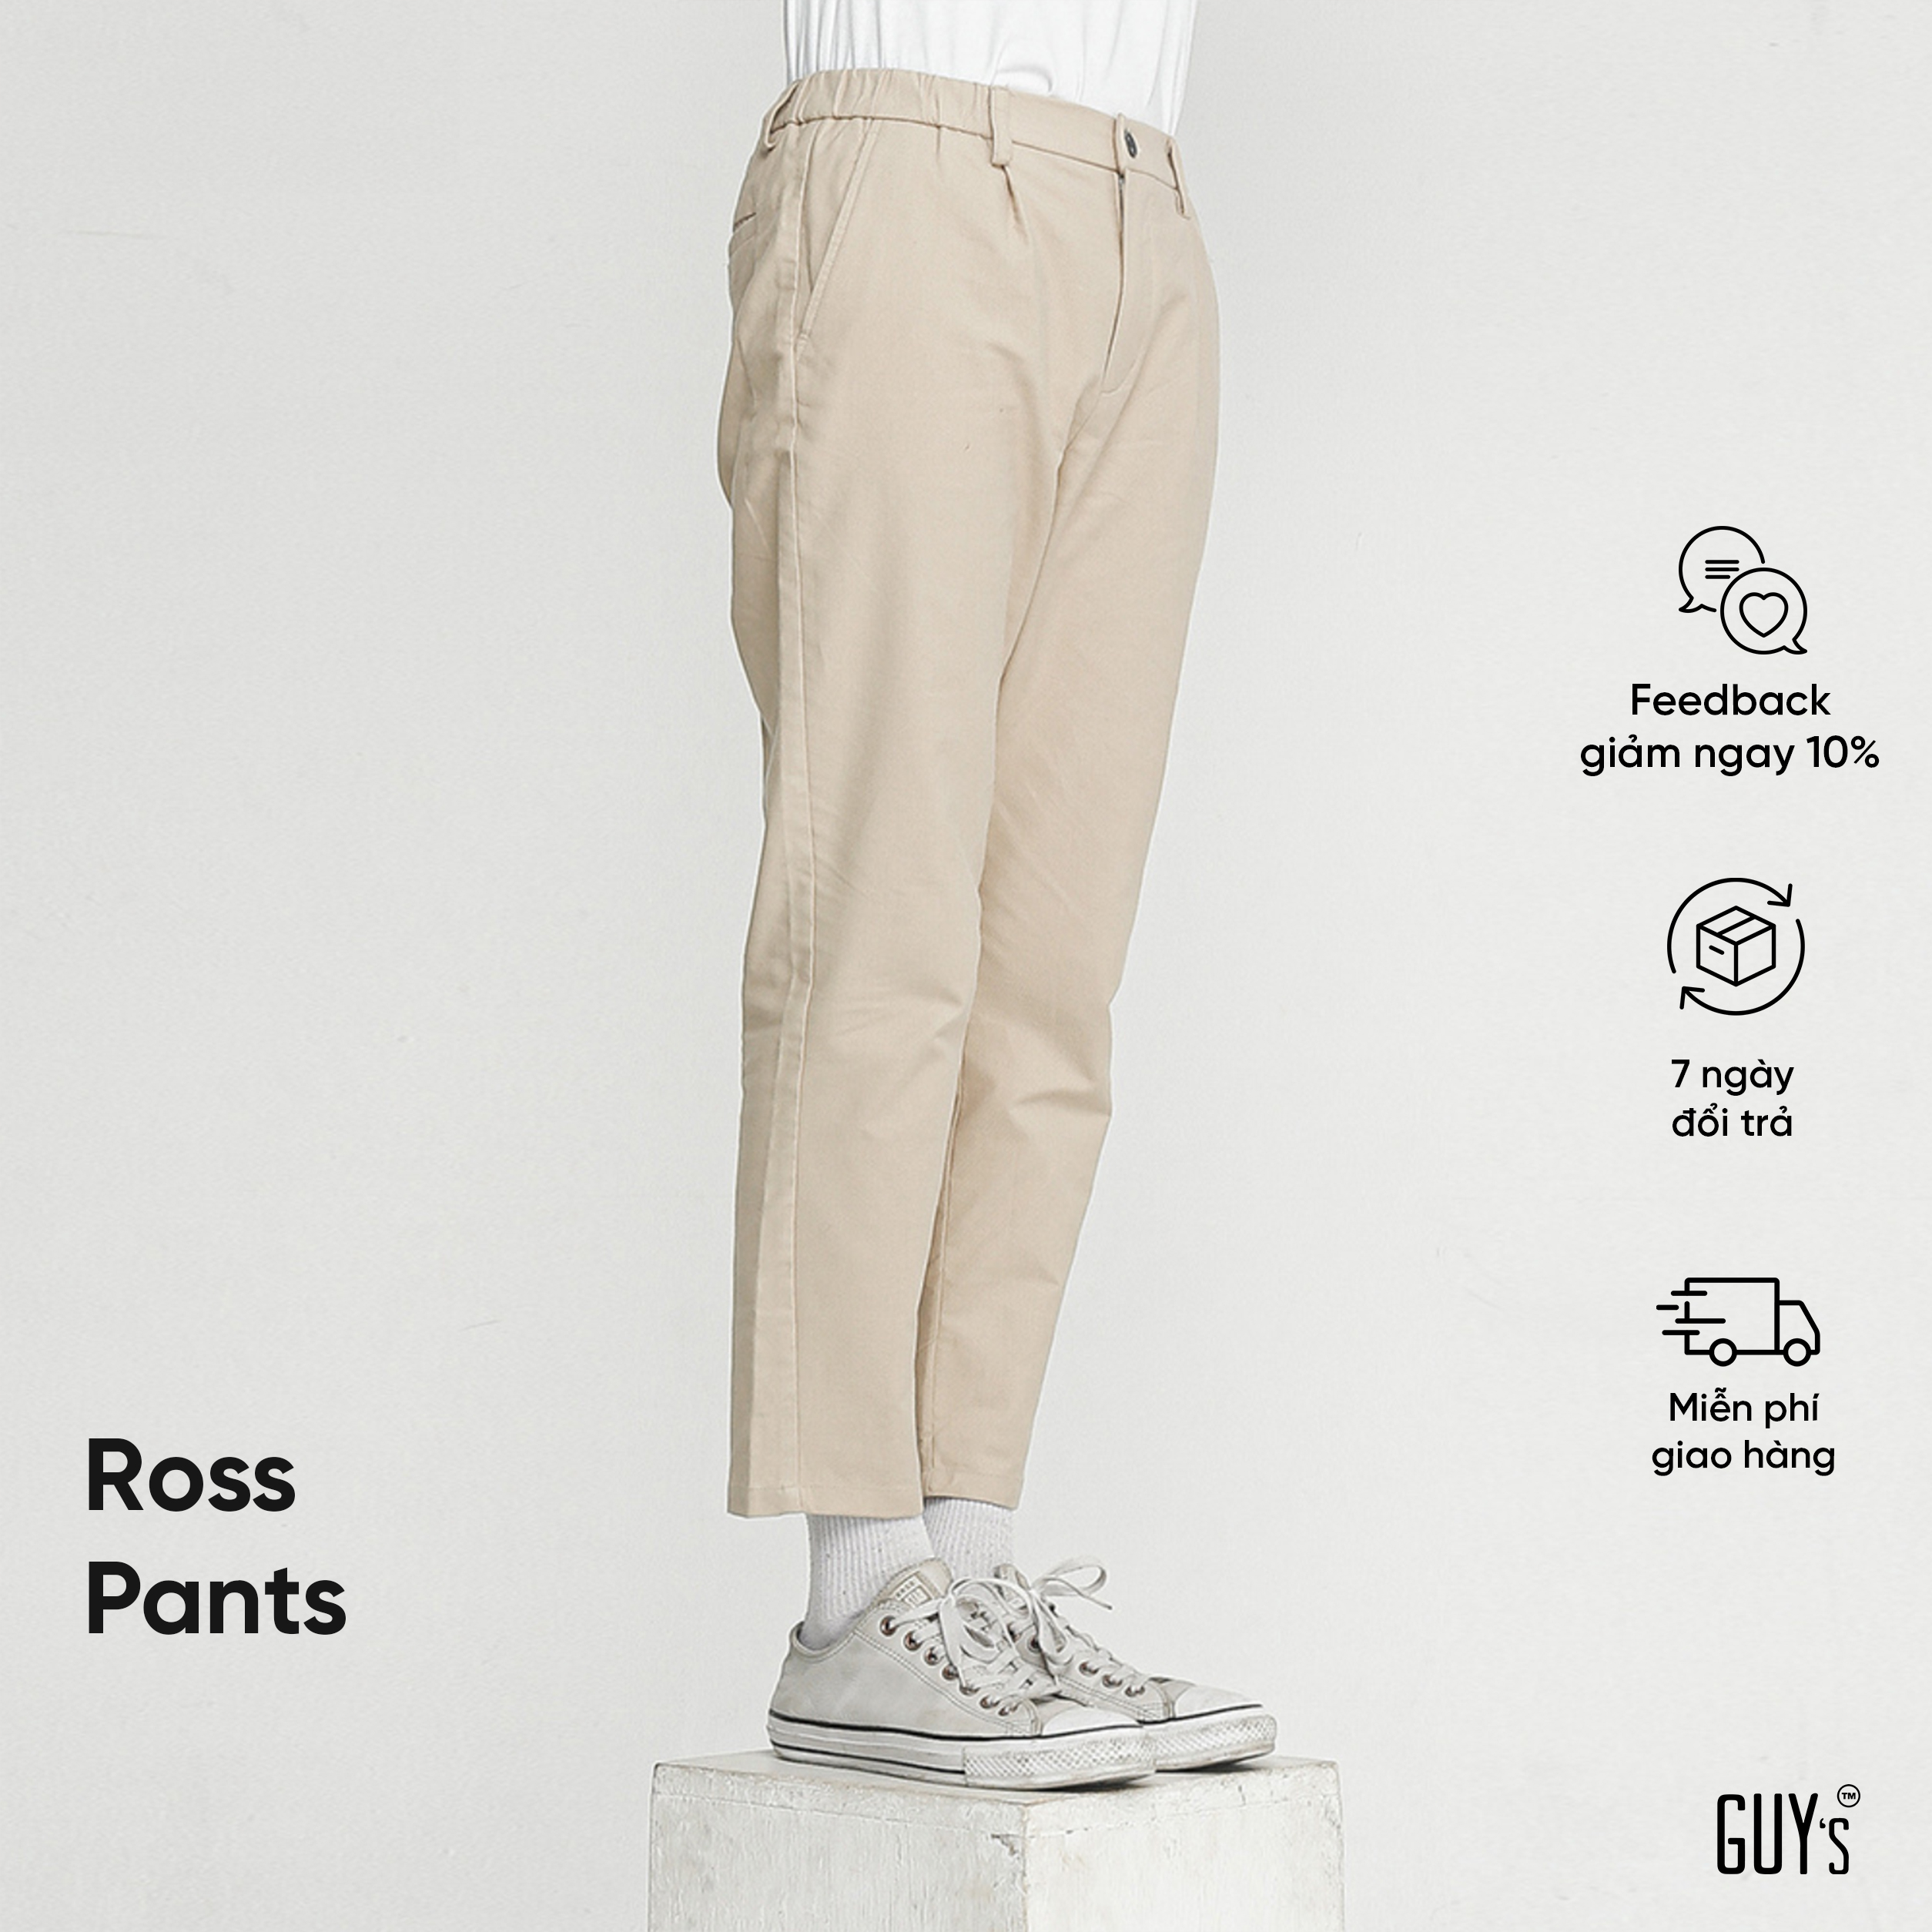 HÀNG THIẾT KẾ Quần kaki Ross Pants, Chất liệu kaki, Dáng slim fit tôn